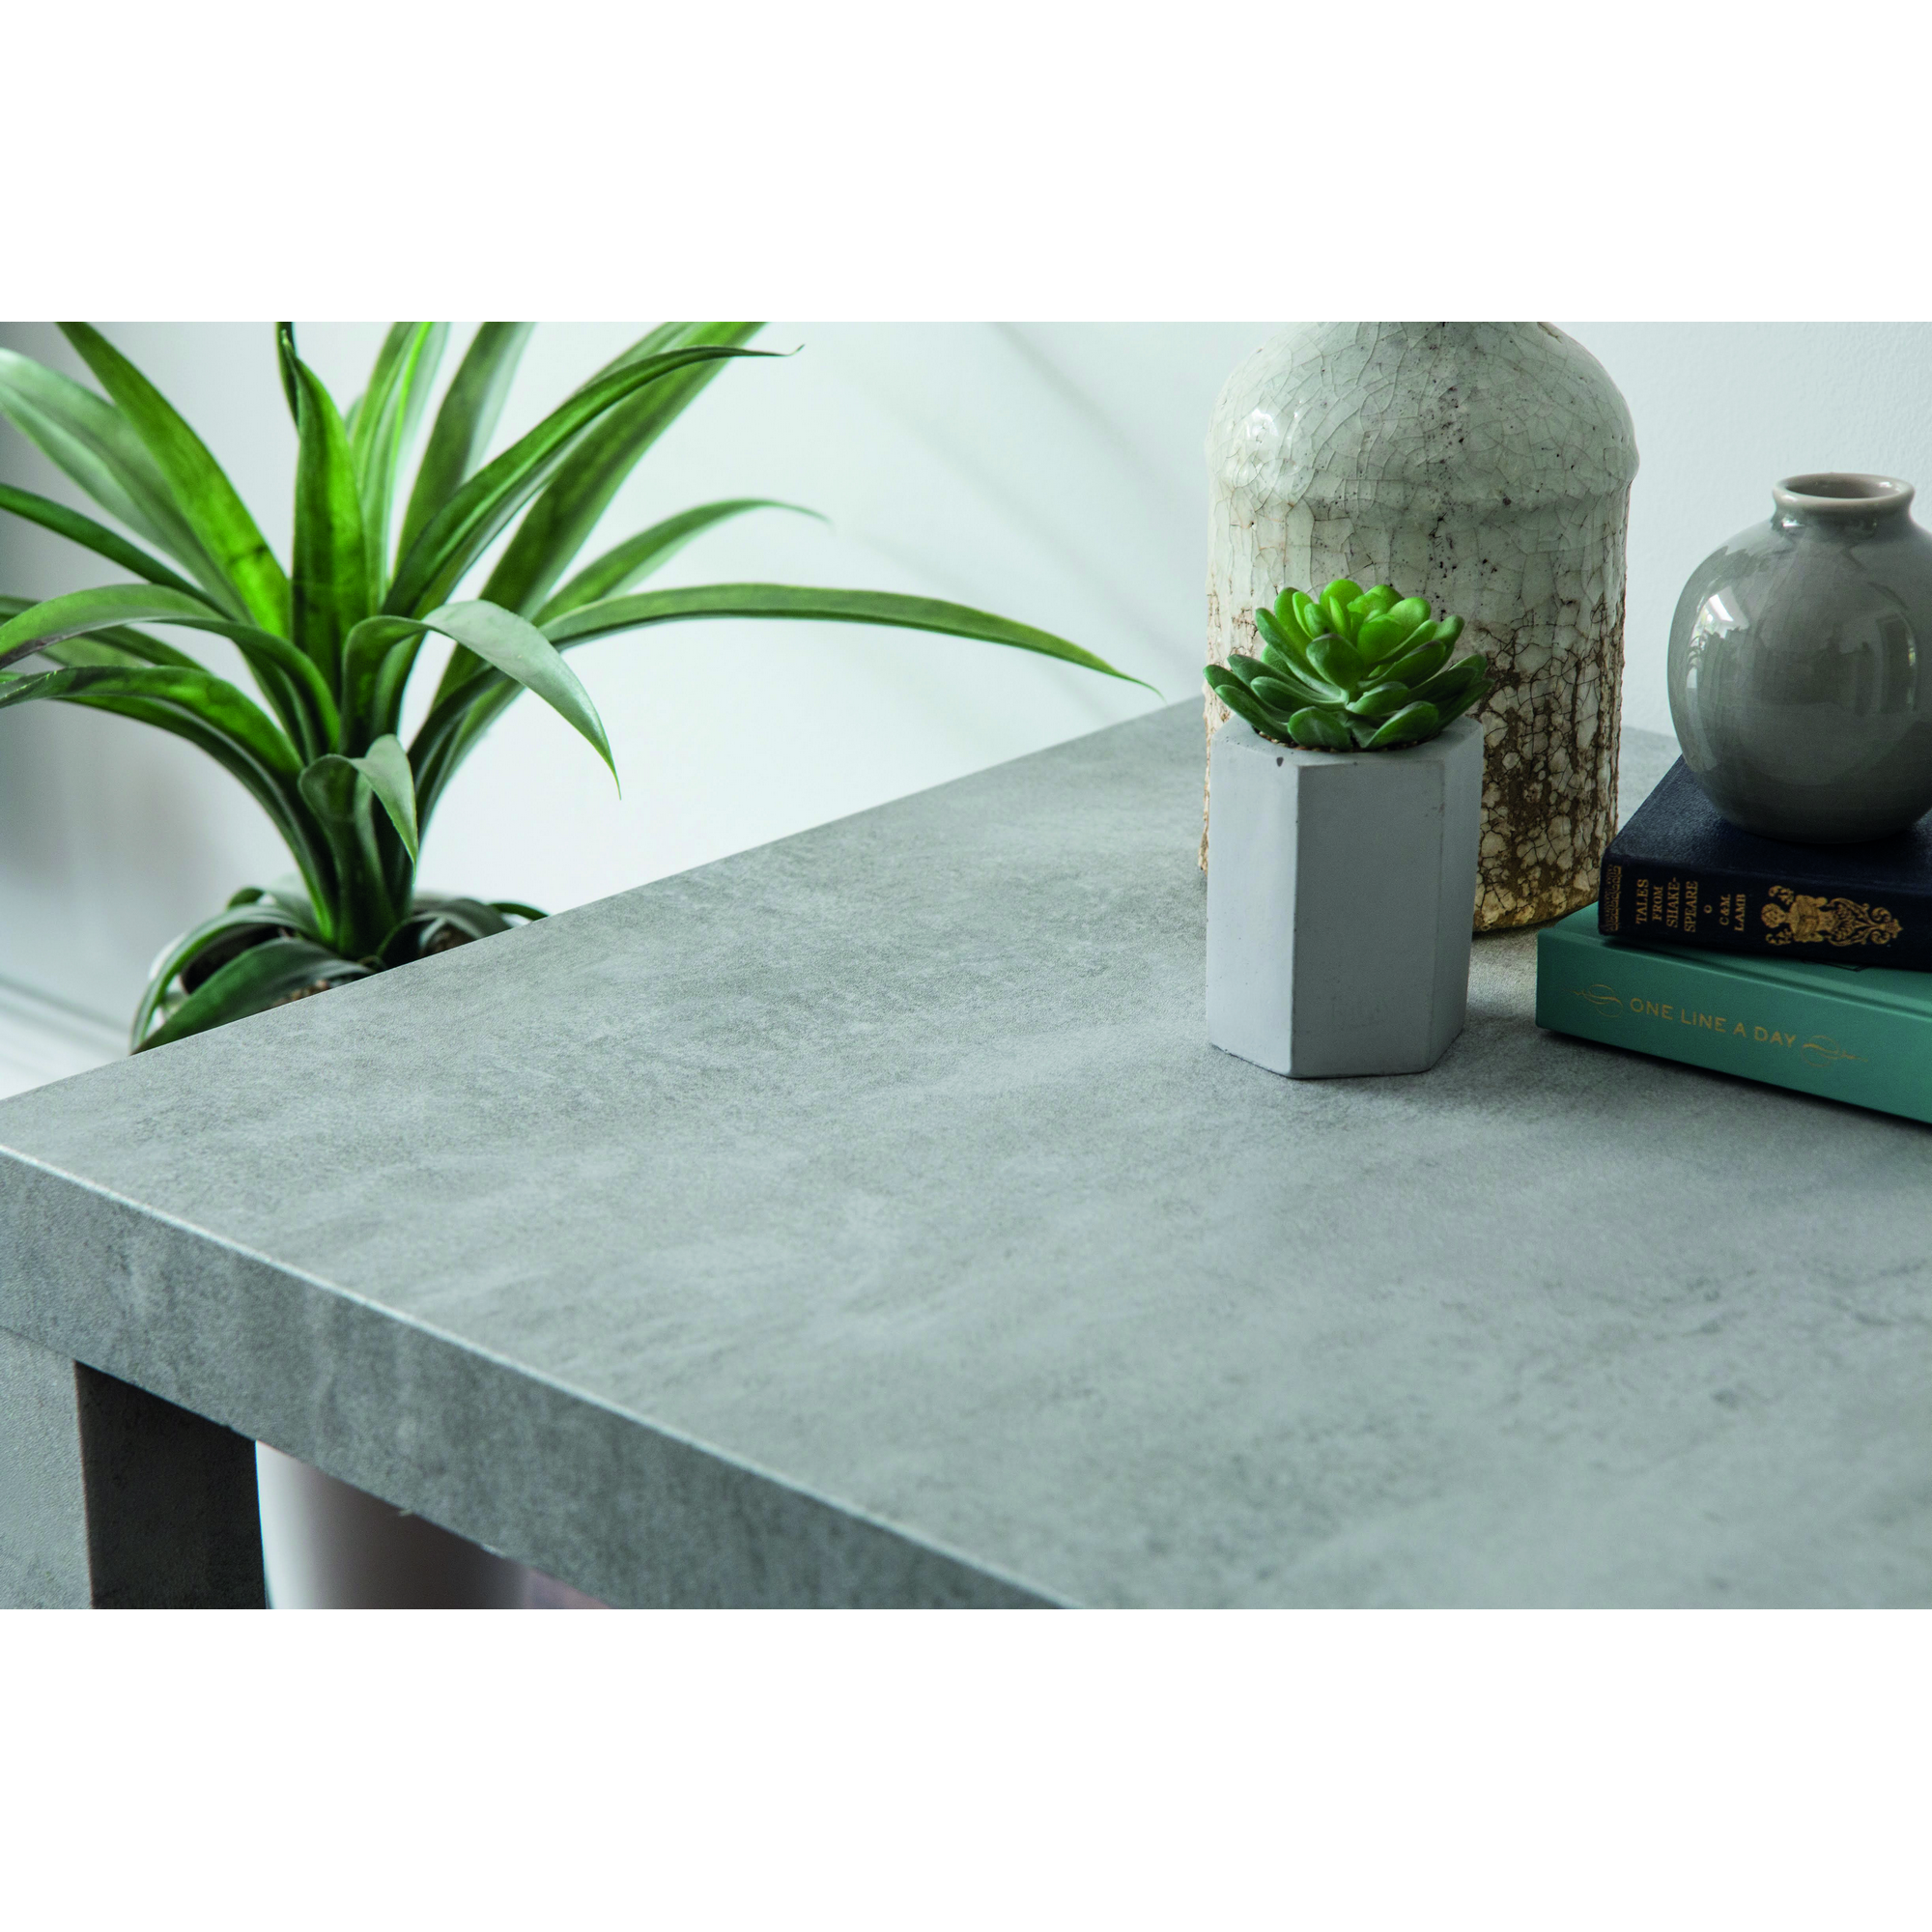 Klebefolie 'Concrete' grau 200 x 67,5 cm + product picture